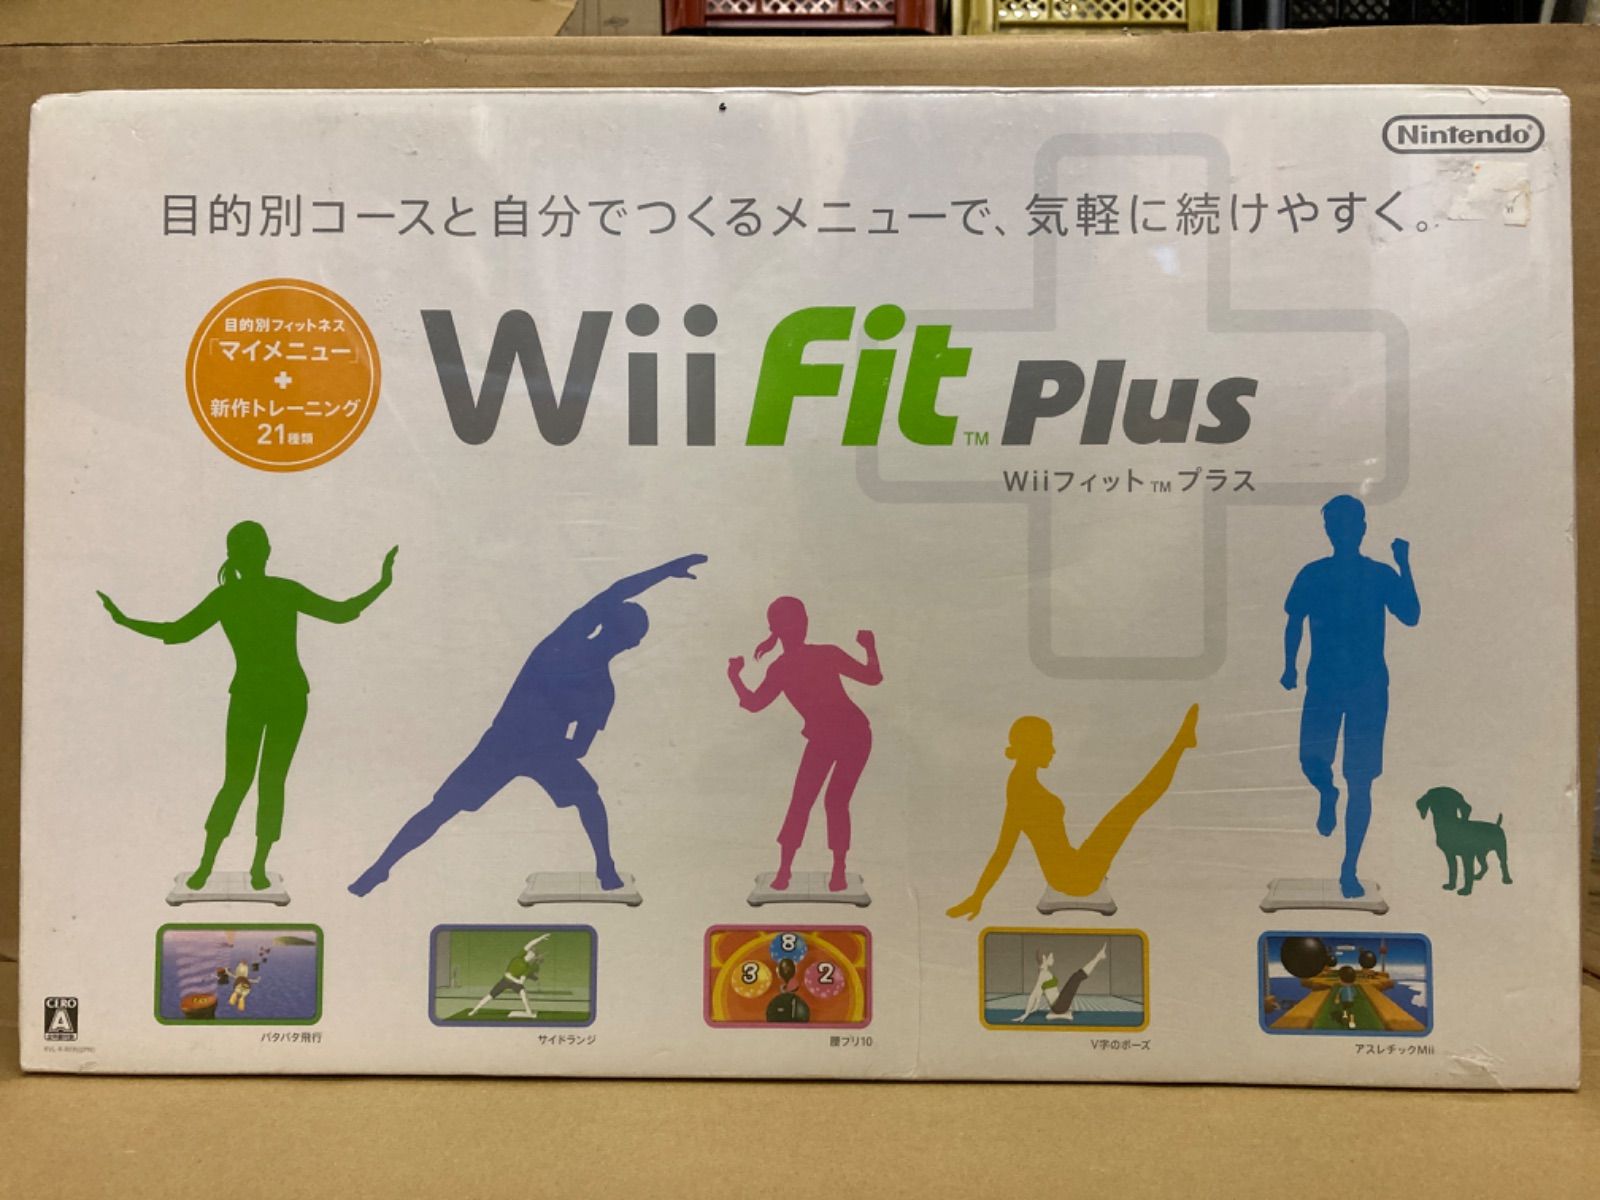 058【未開封品】Wii fit PLUS バランスWiiボードセット - ノッカー